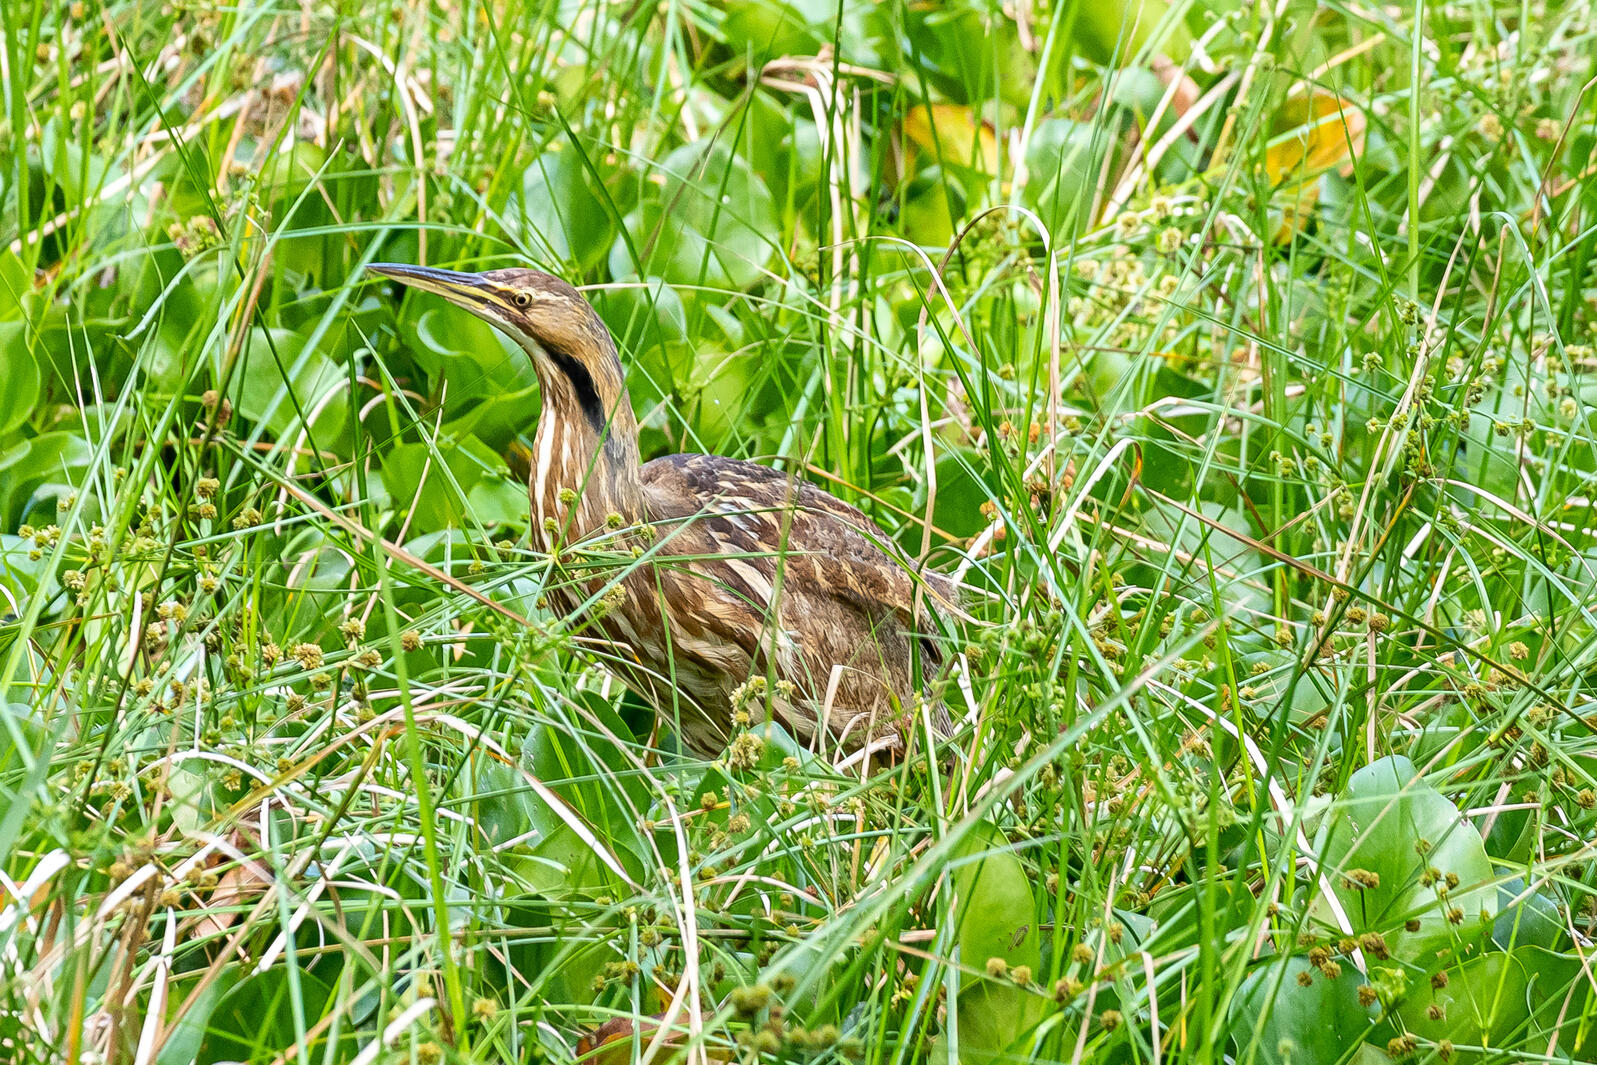 A bird in the grass